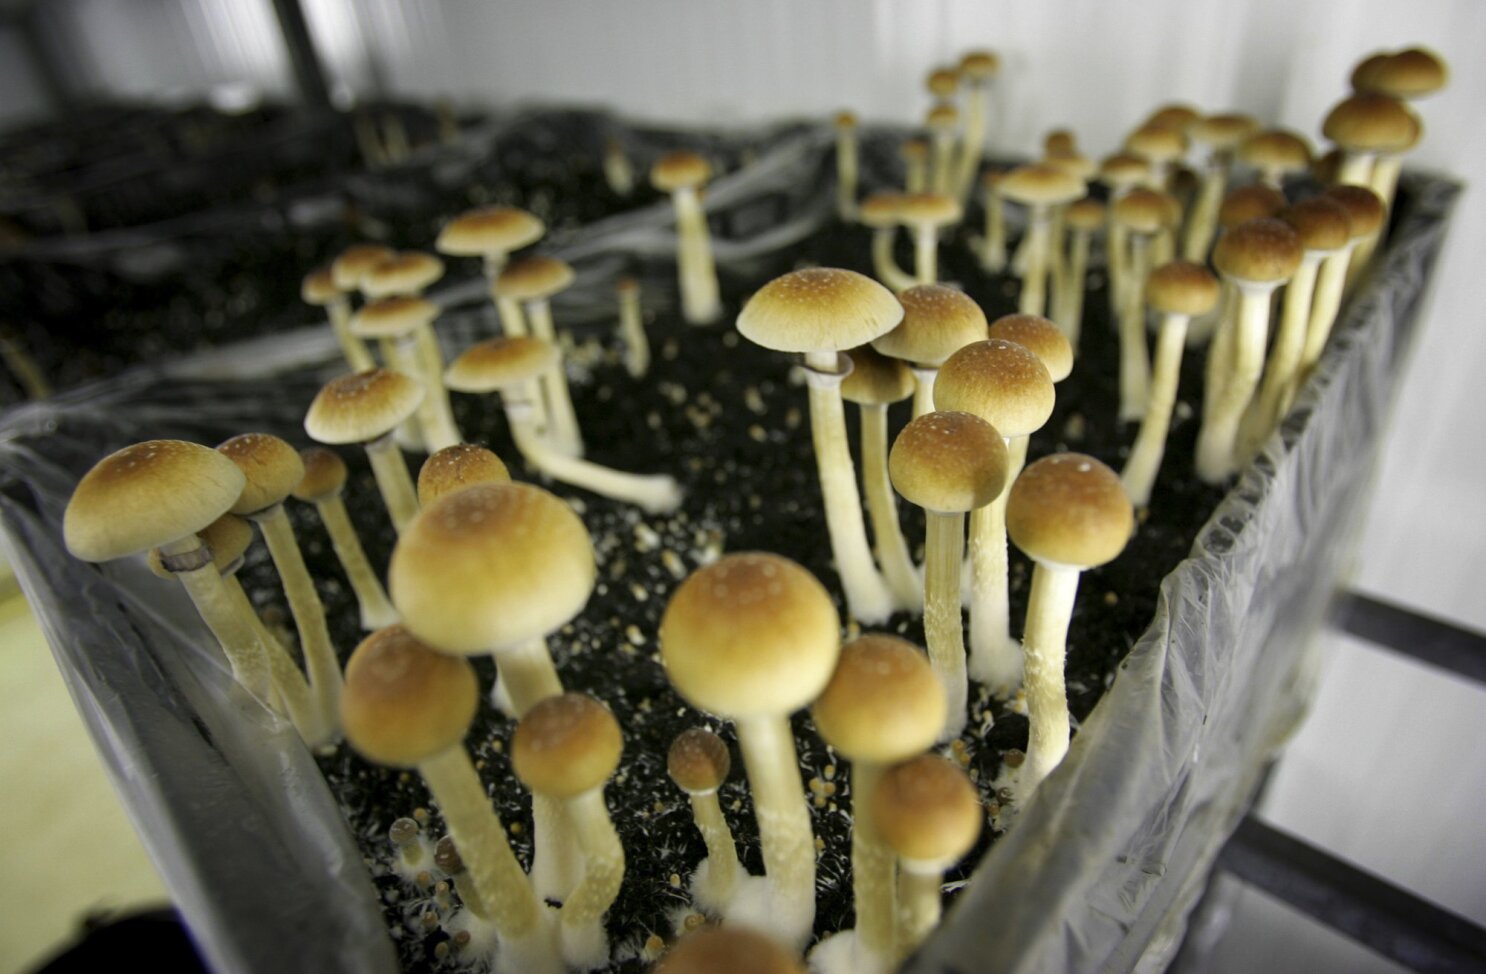 Investigating mushrooms